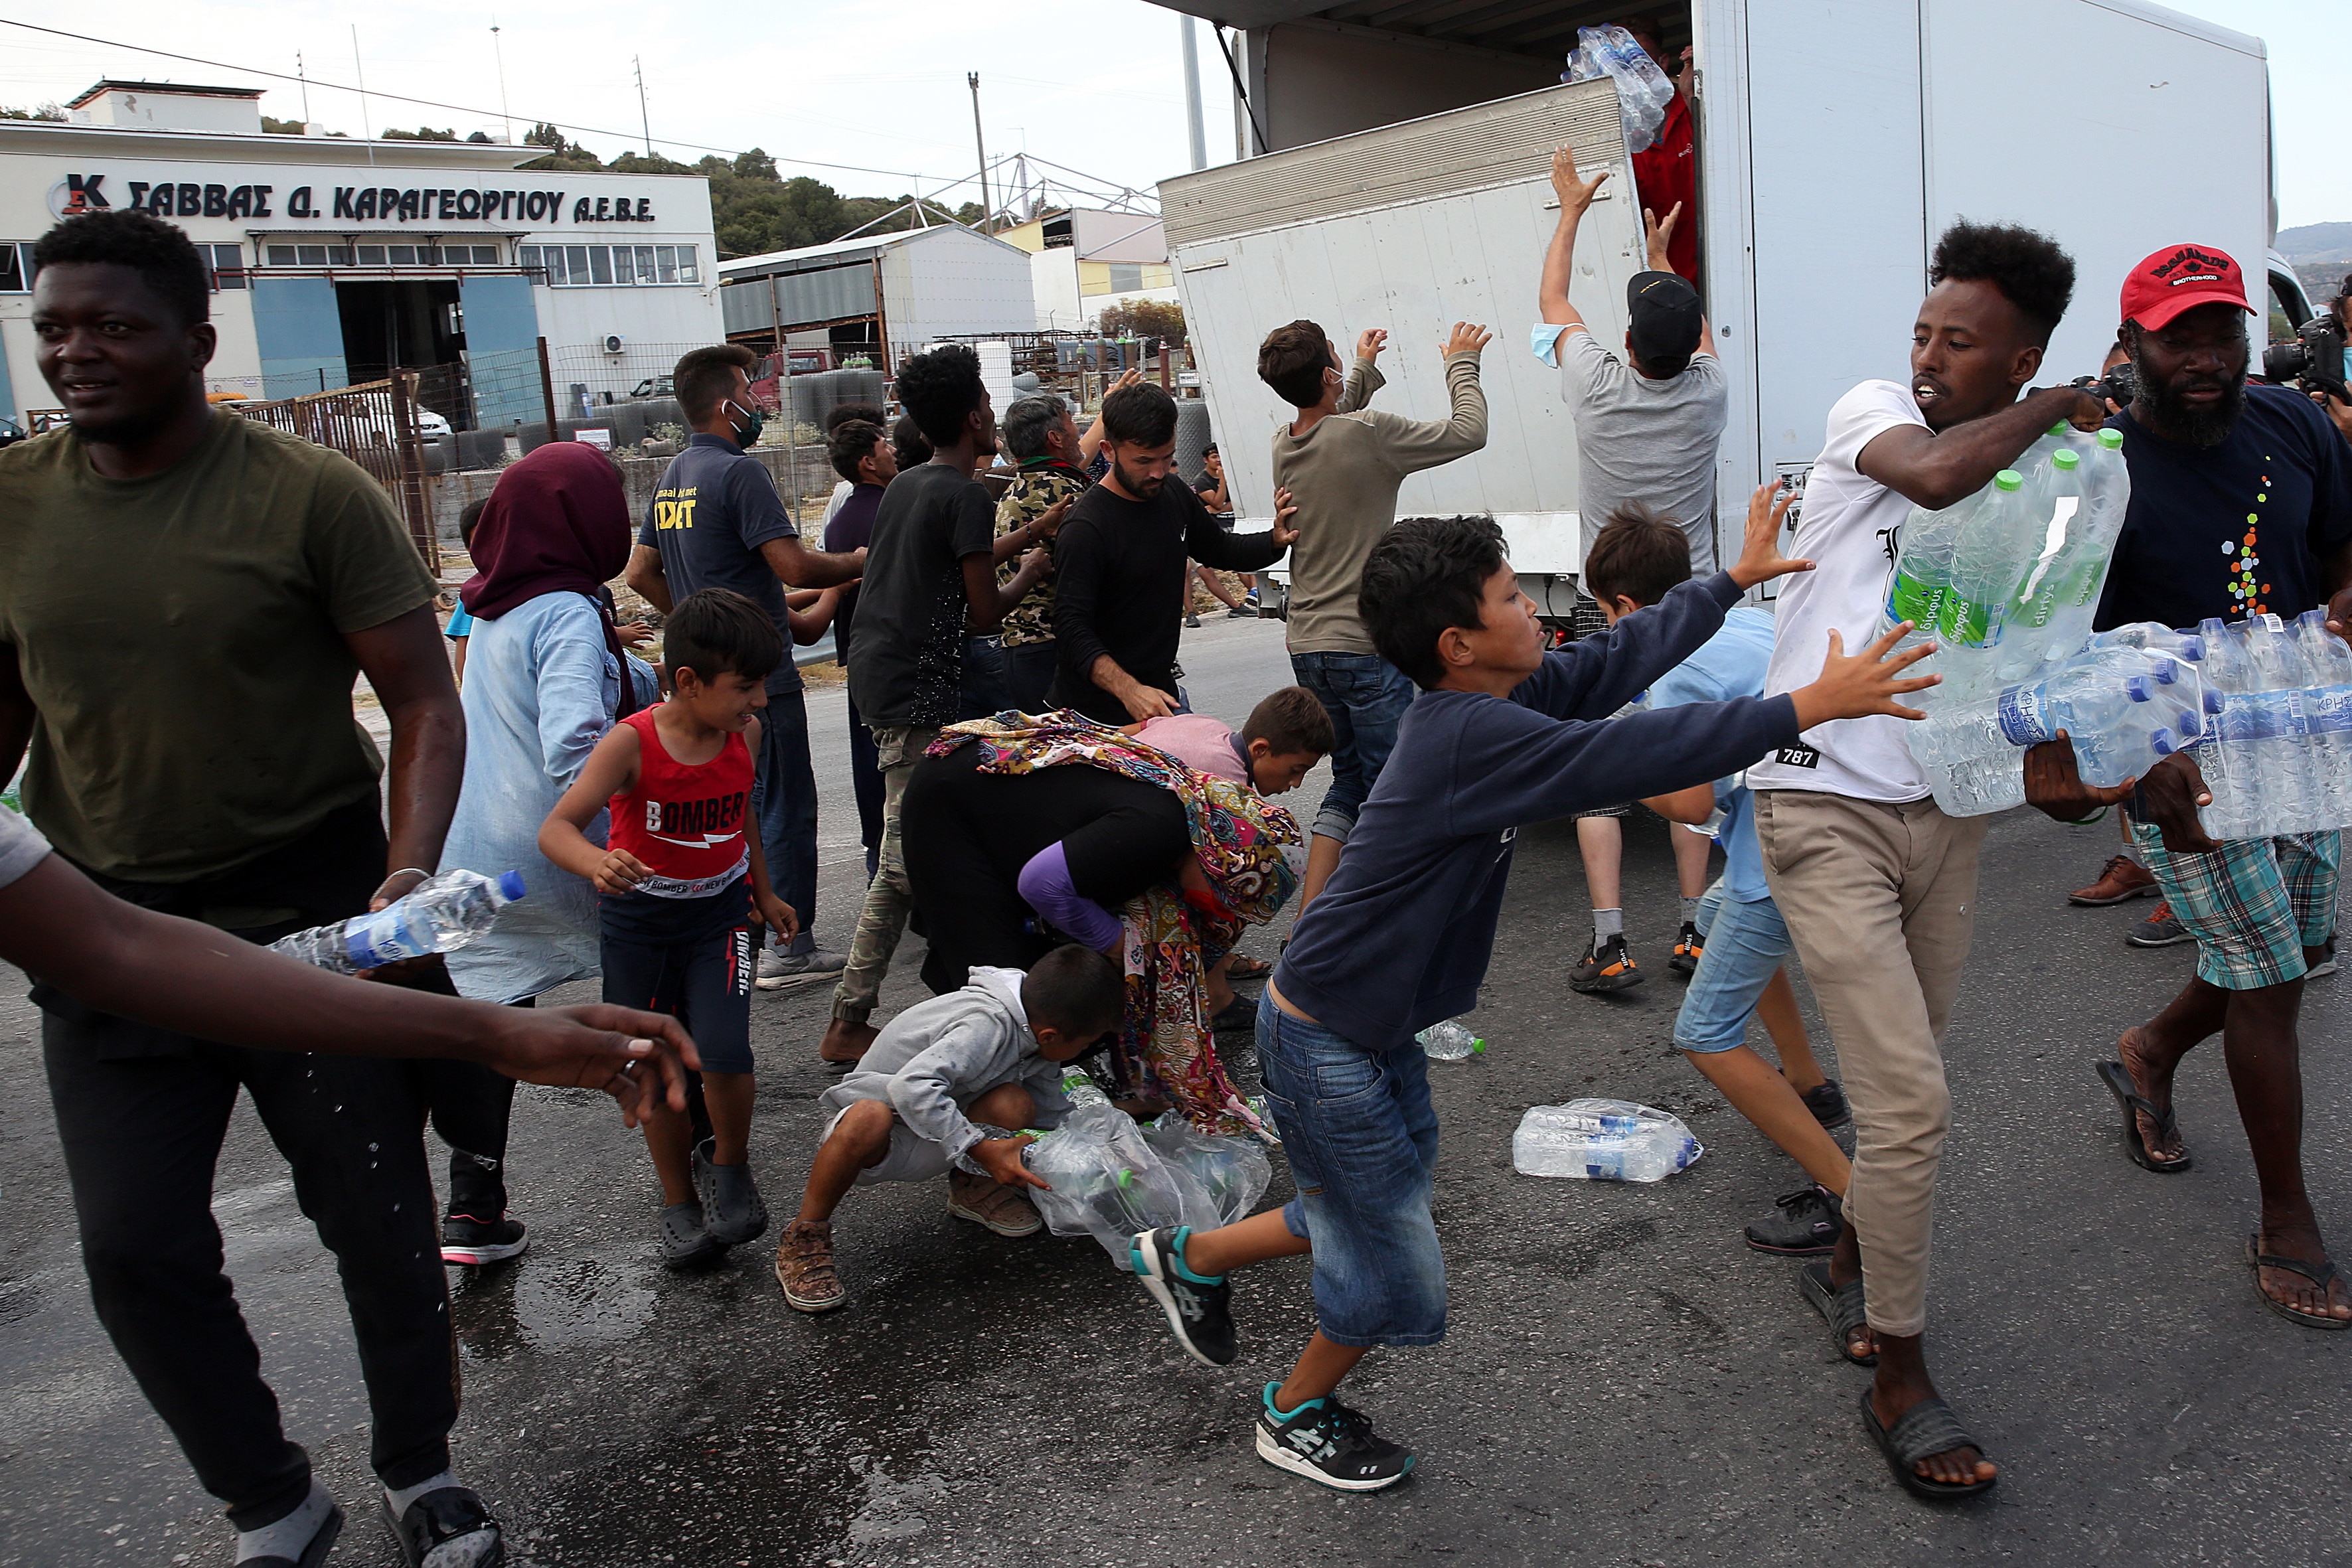 طالبو اللجوء يتشاجرون للحصول على بعض المياه بالقرب من المخيم الجديد في كارا تيبي في جزيرة ليسبوس ، اليونان ، في 12 سبتمبر.